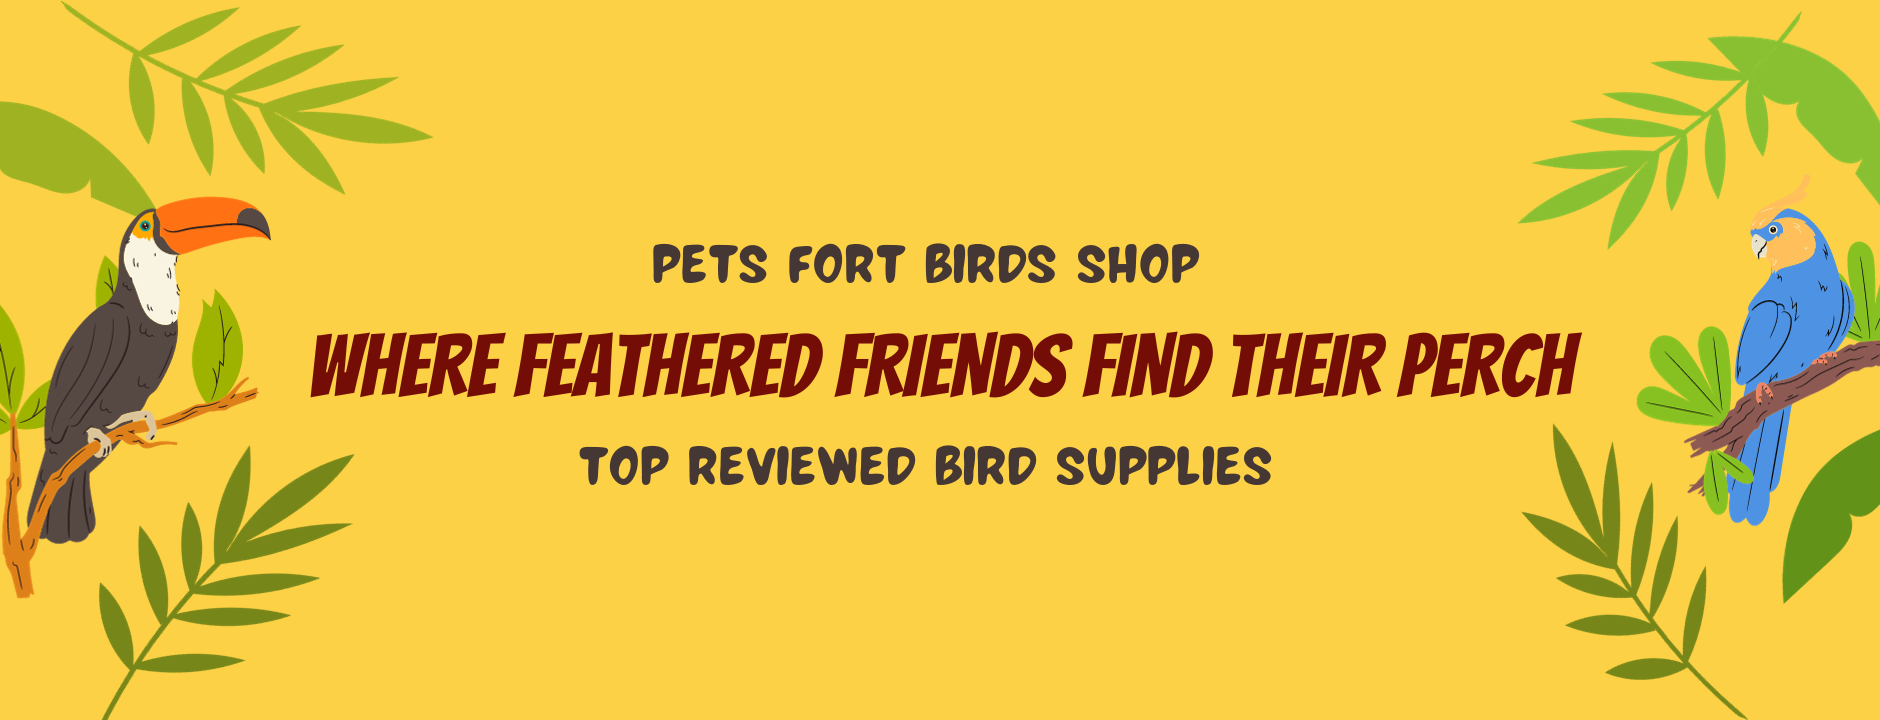 Best Reviewed Bird Supplies